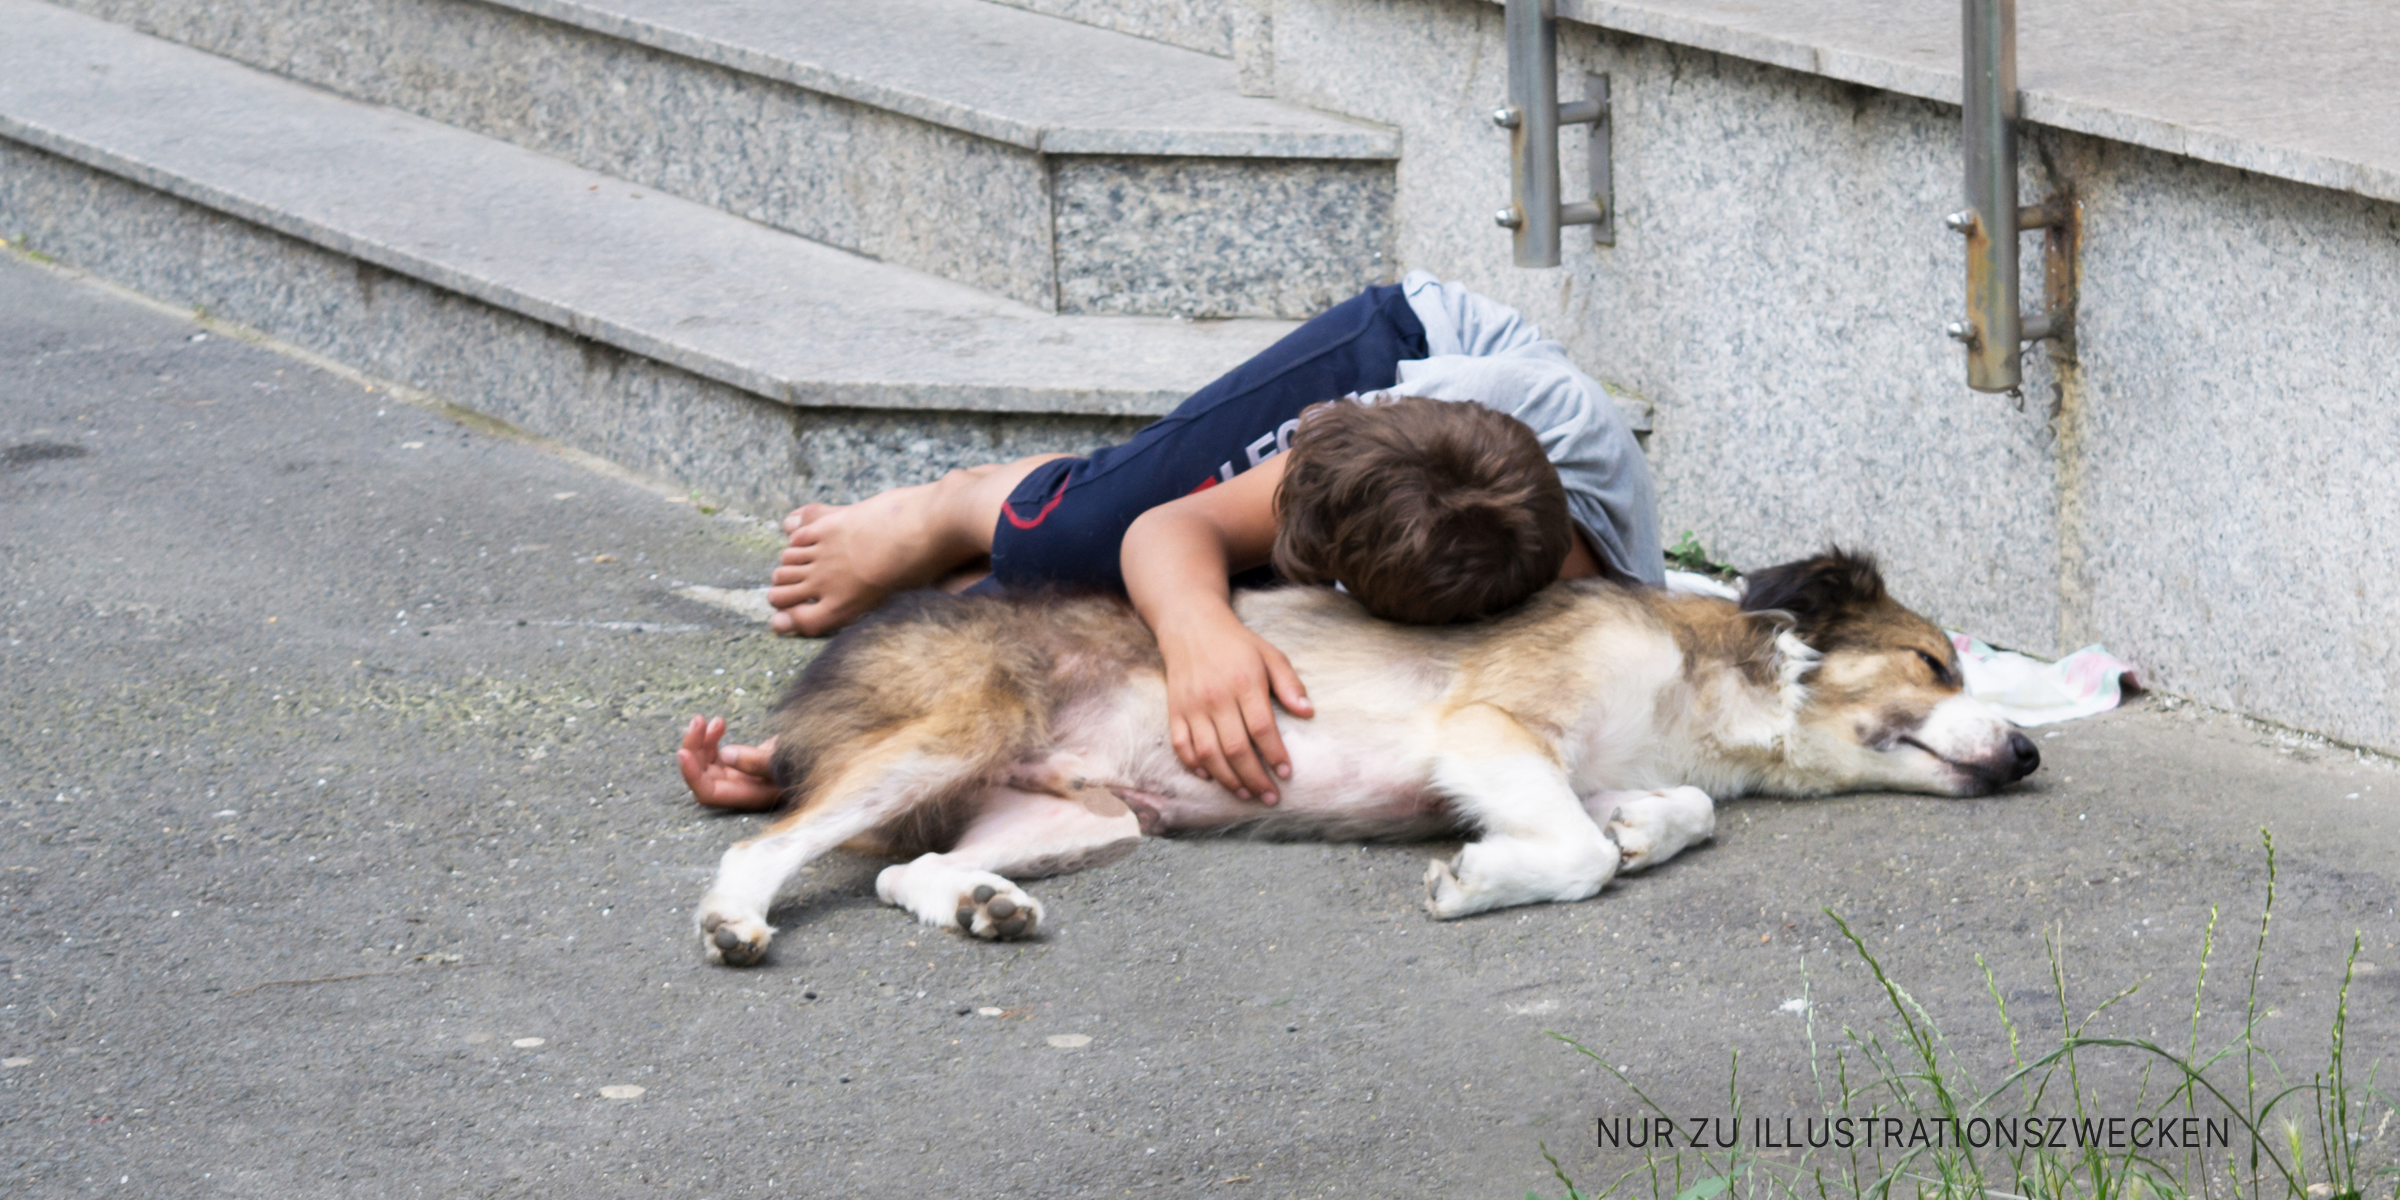 Junge liegt auf Hund in Straße | Quelle: Shutterstock